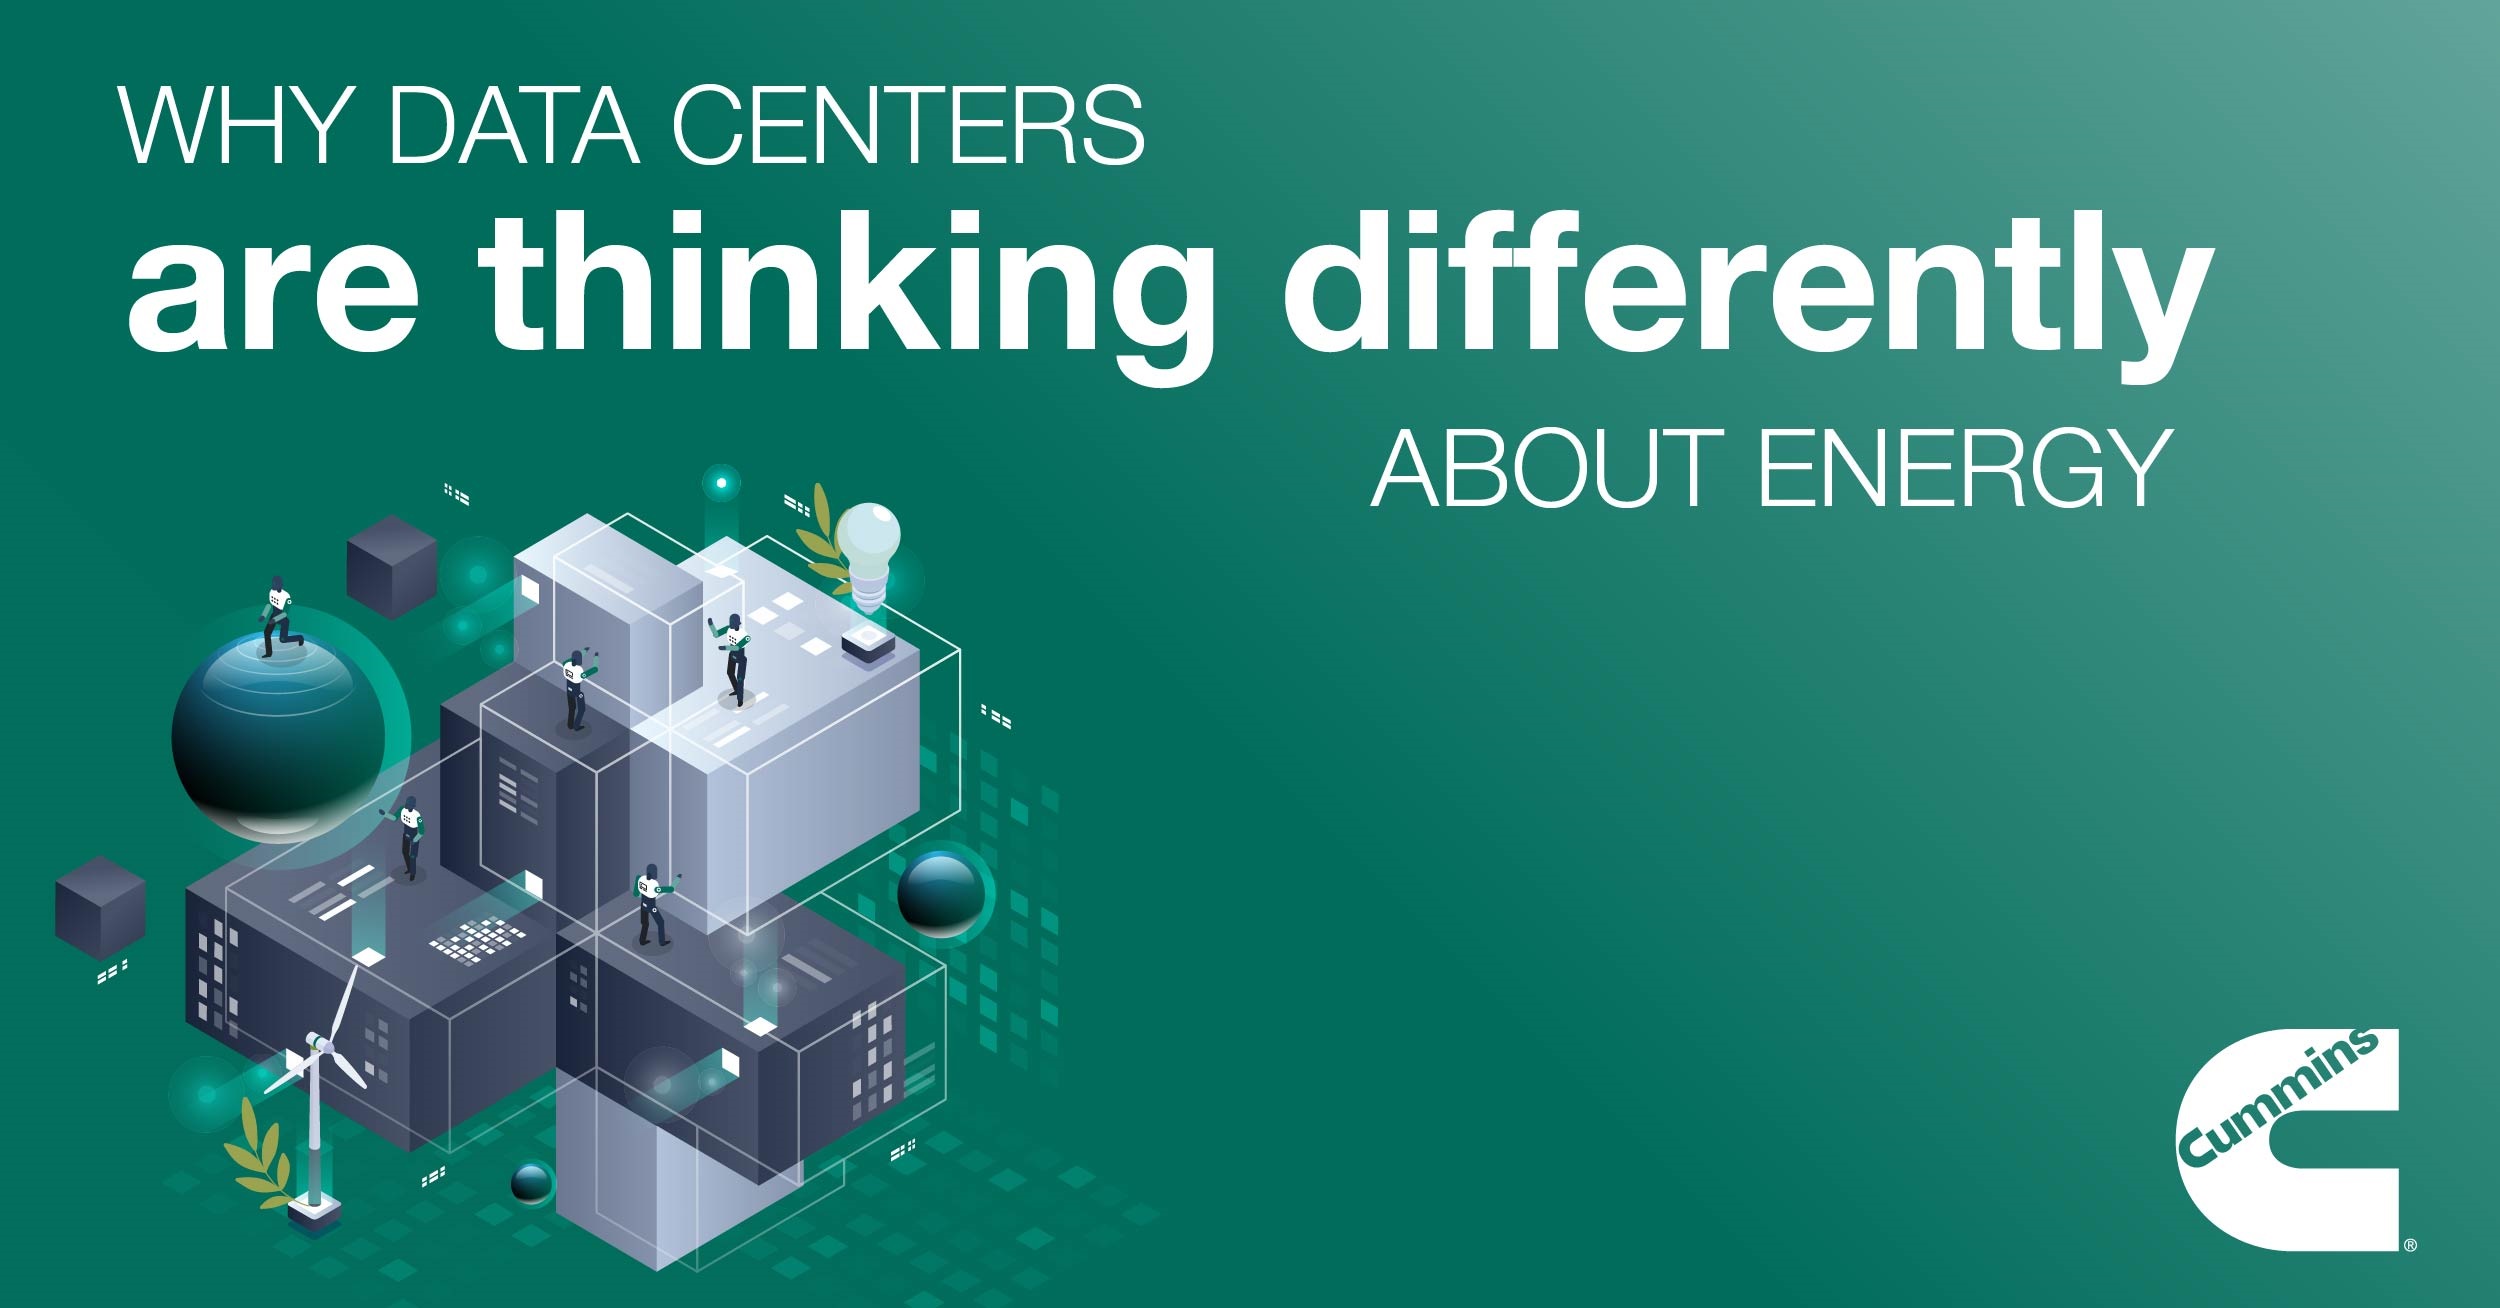 データセンターがエネルギーについて異なる考え方をしている理由